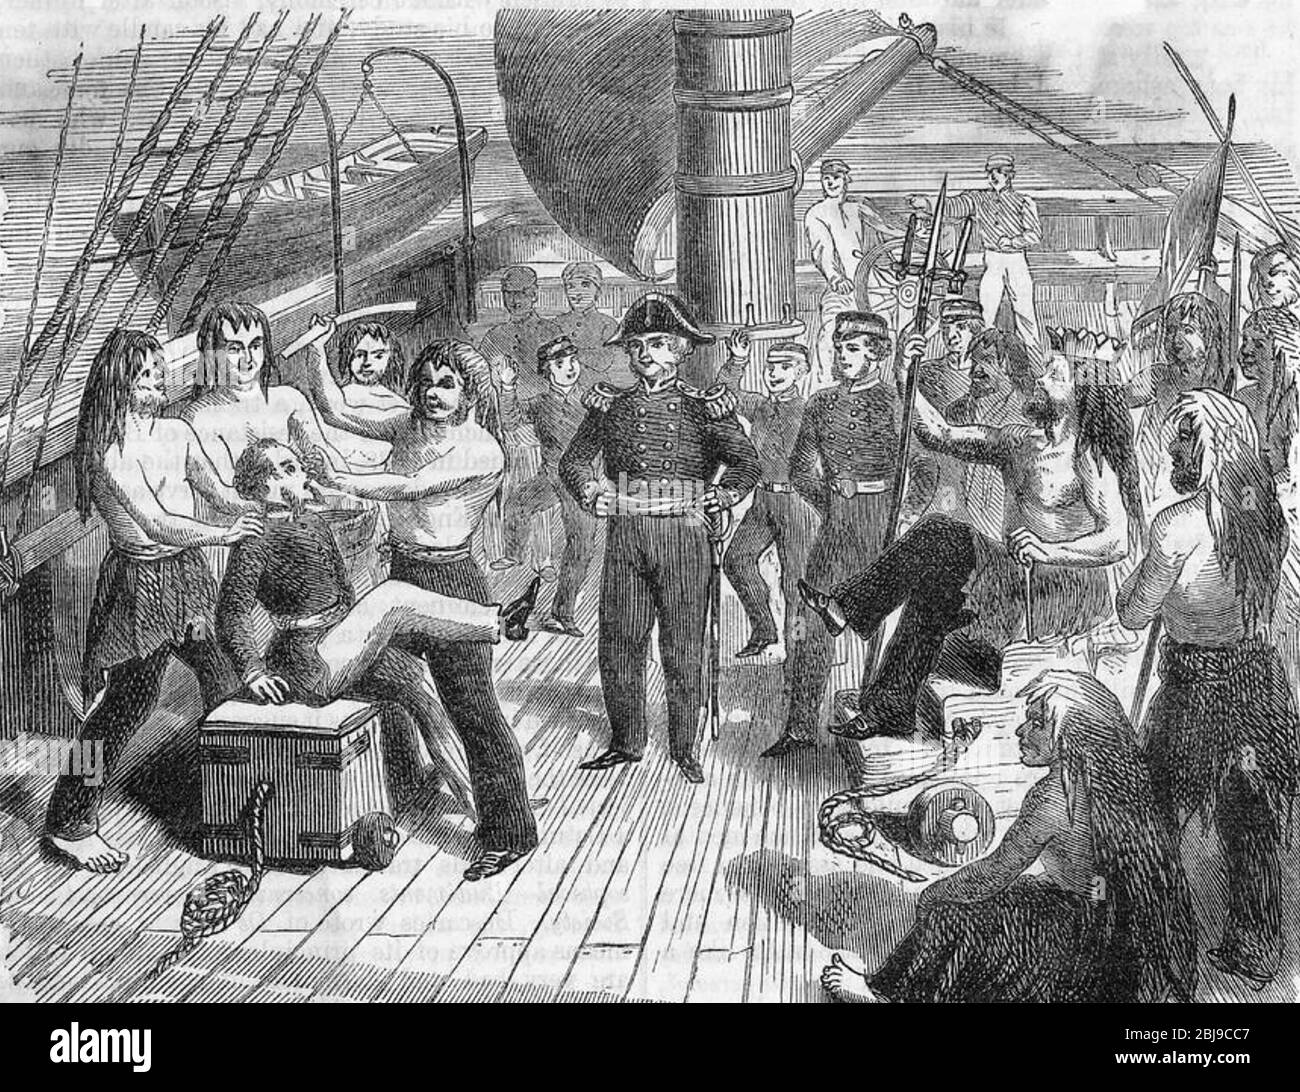 ATTRAVERSANDO la cerimonia DELL'EQUATORE negli anni 1840 Foto Stock